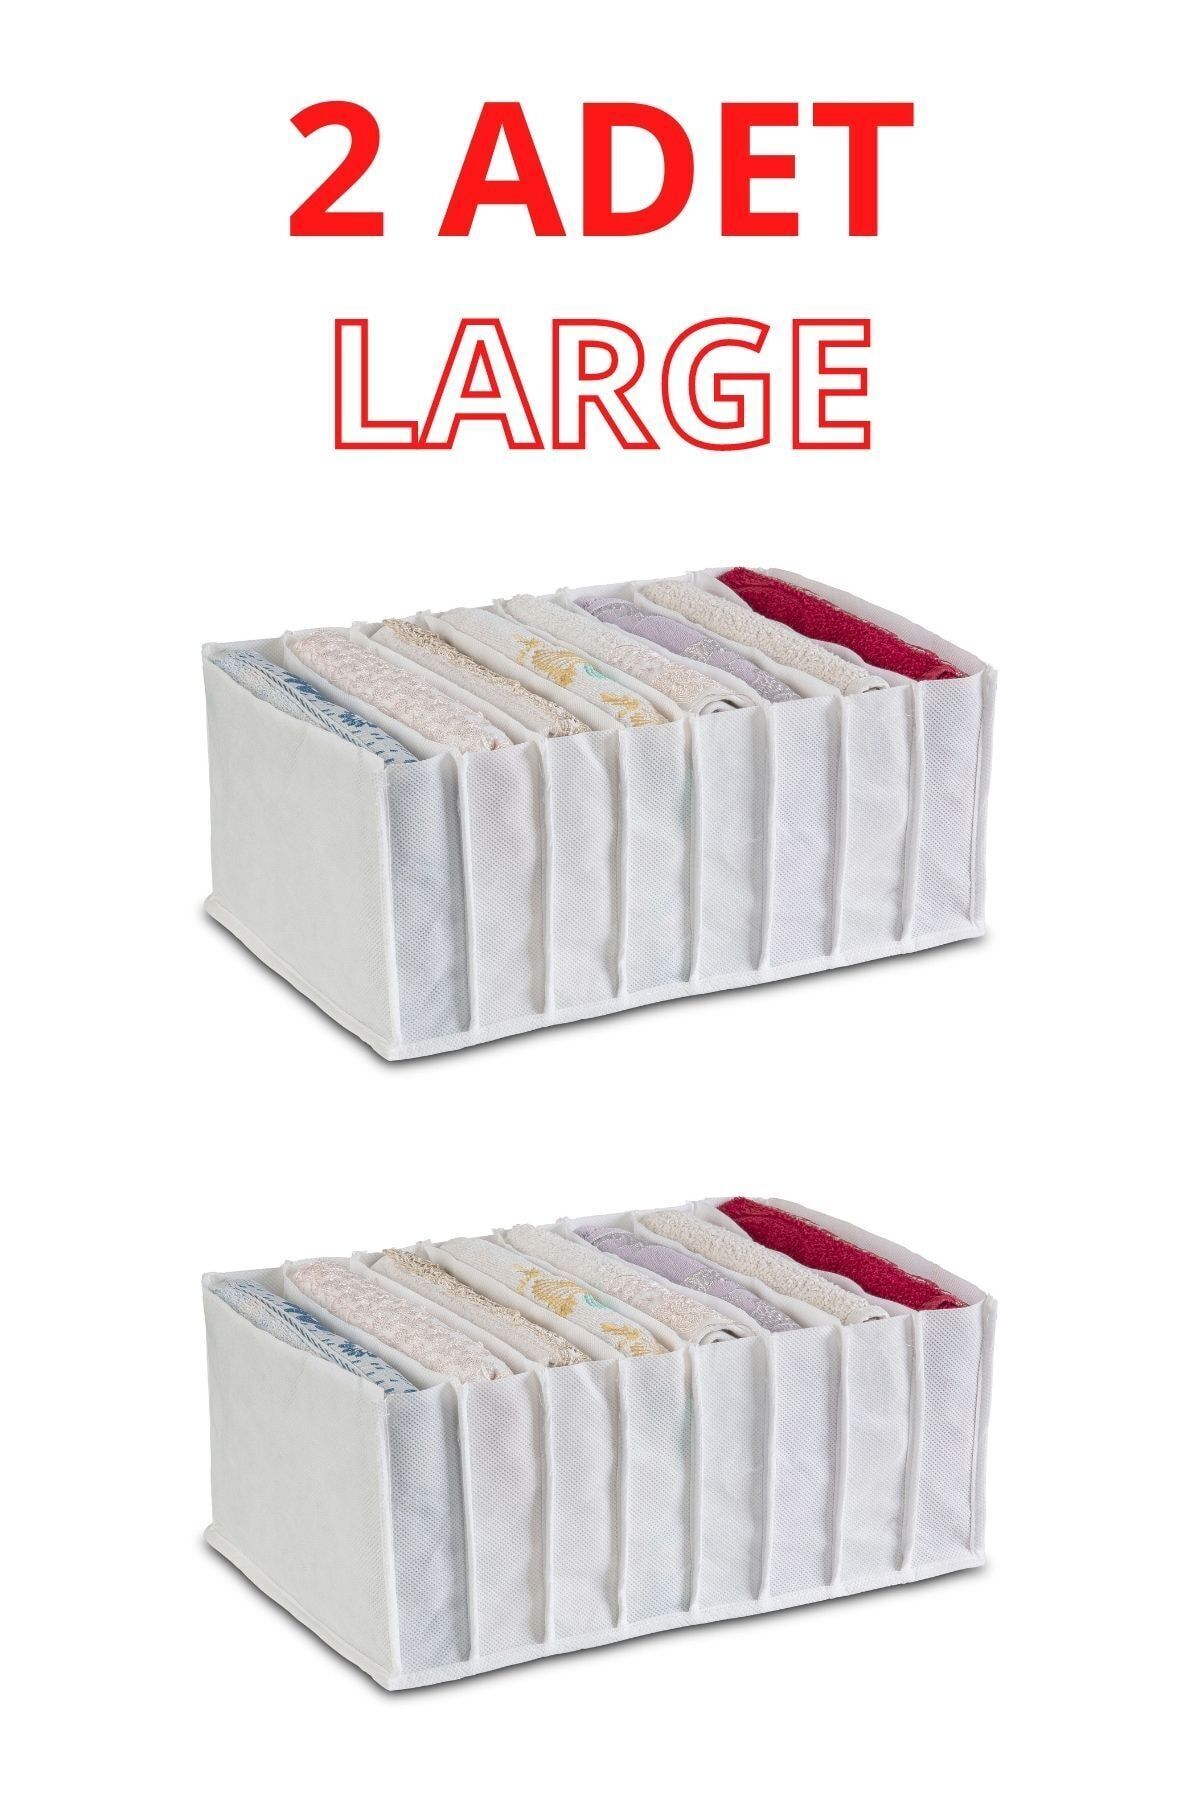 Ophelias Touch 2 Adet Large Organizer Çekmece Düzenleyici Yıkanabilir Dolap Içi Düzenleyici Beyaz Kalın Kumaş